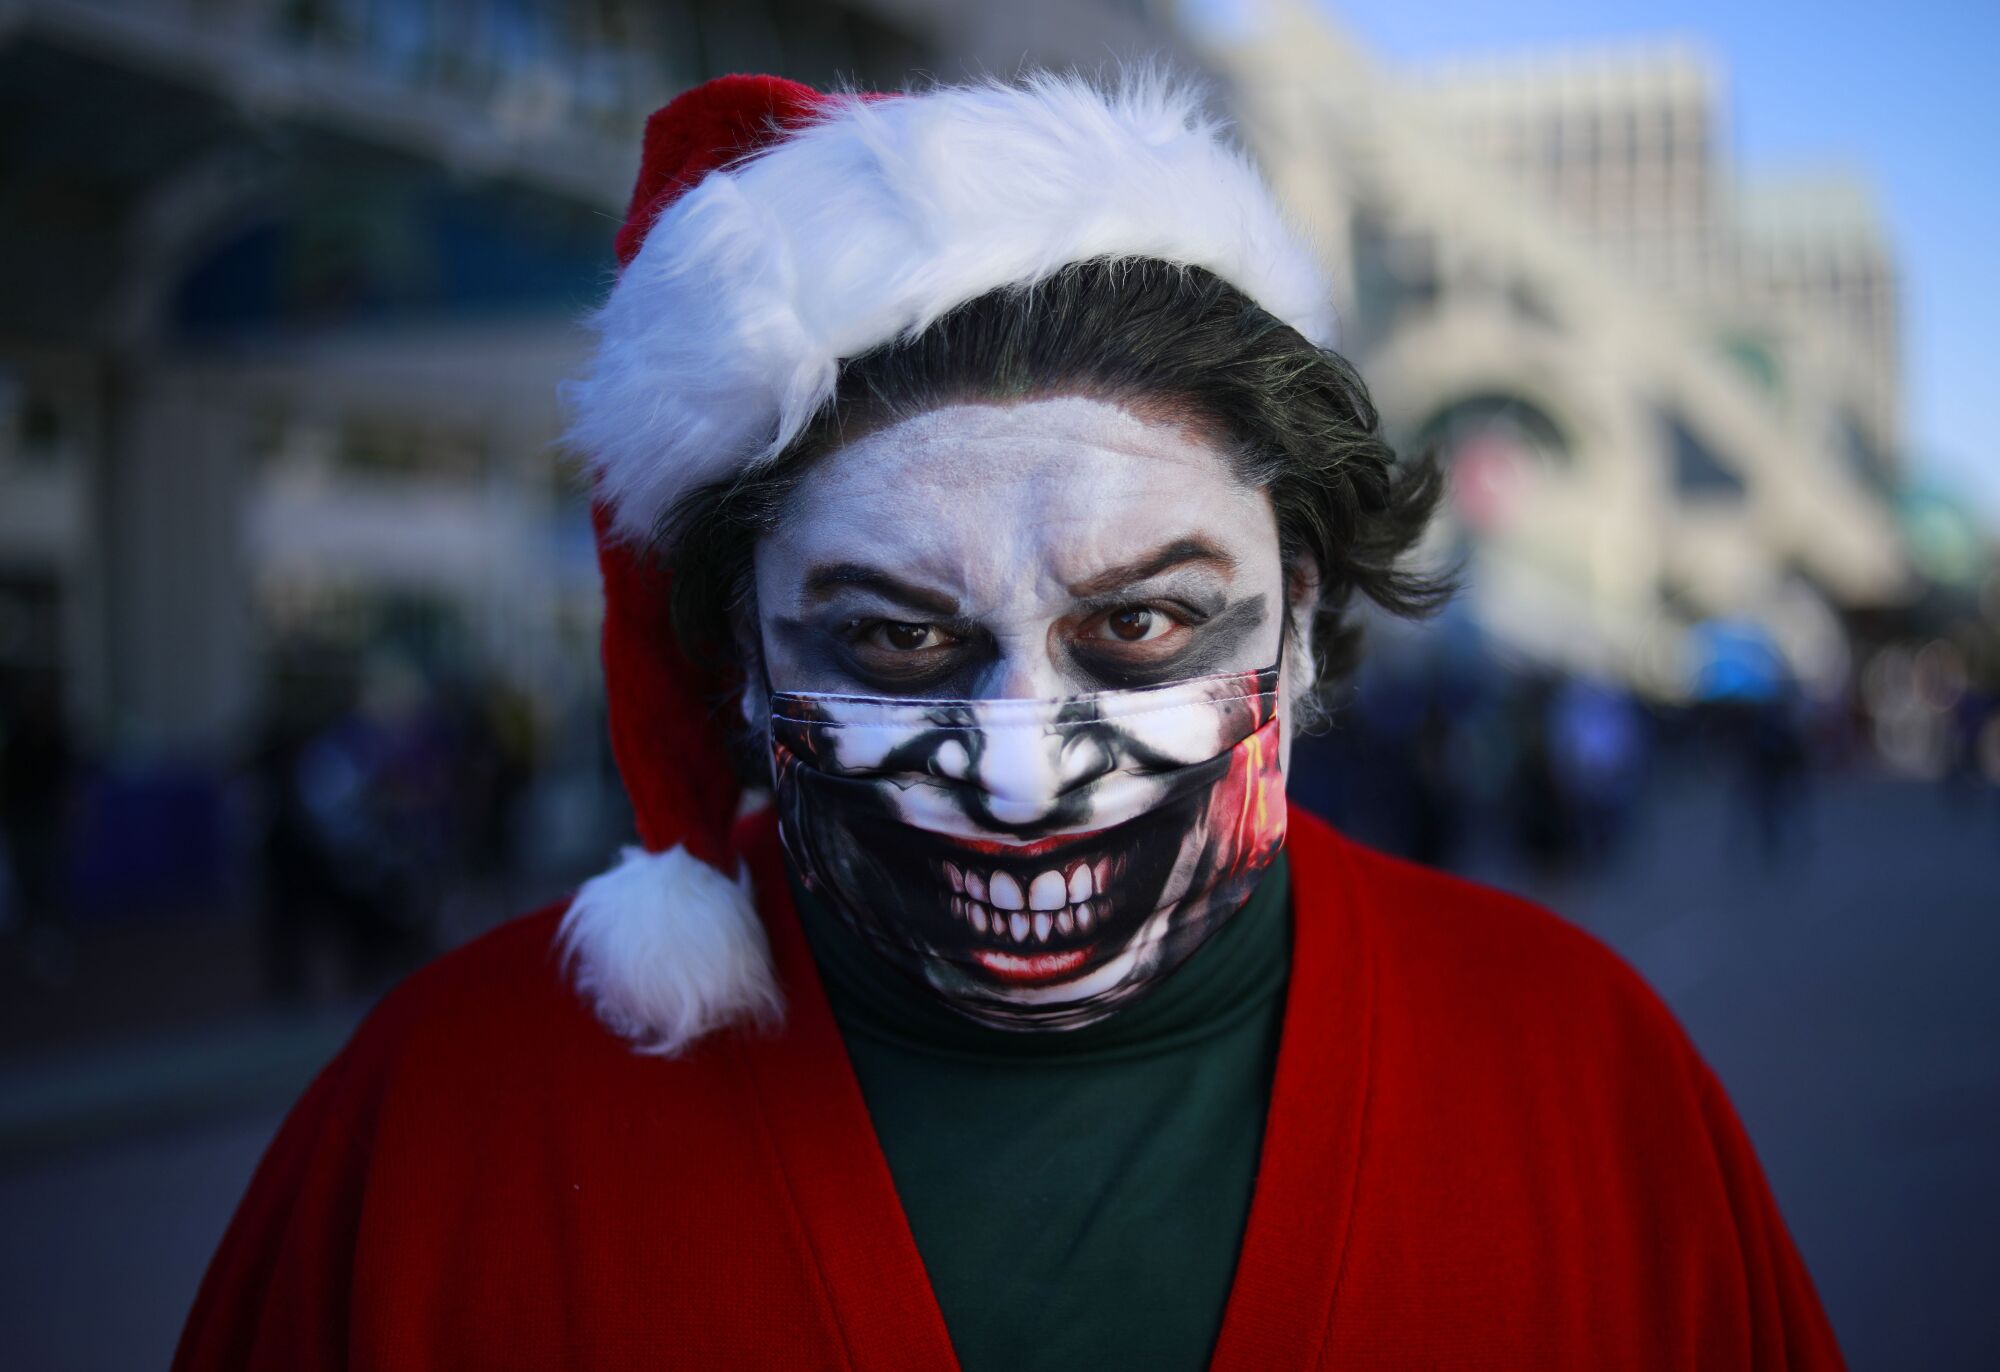 Adan Castillo of Hemet dressed as the Santa Joker at Comic-Con Special Edition.